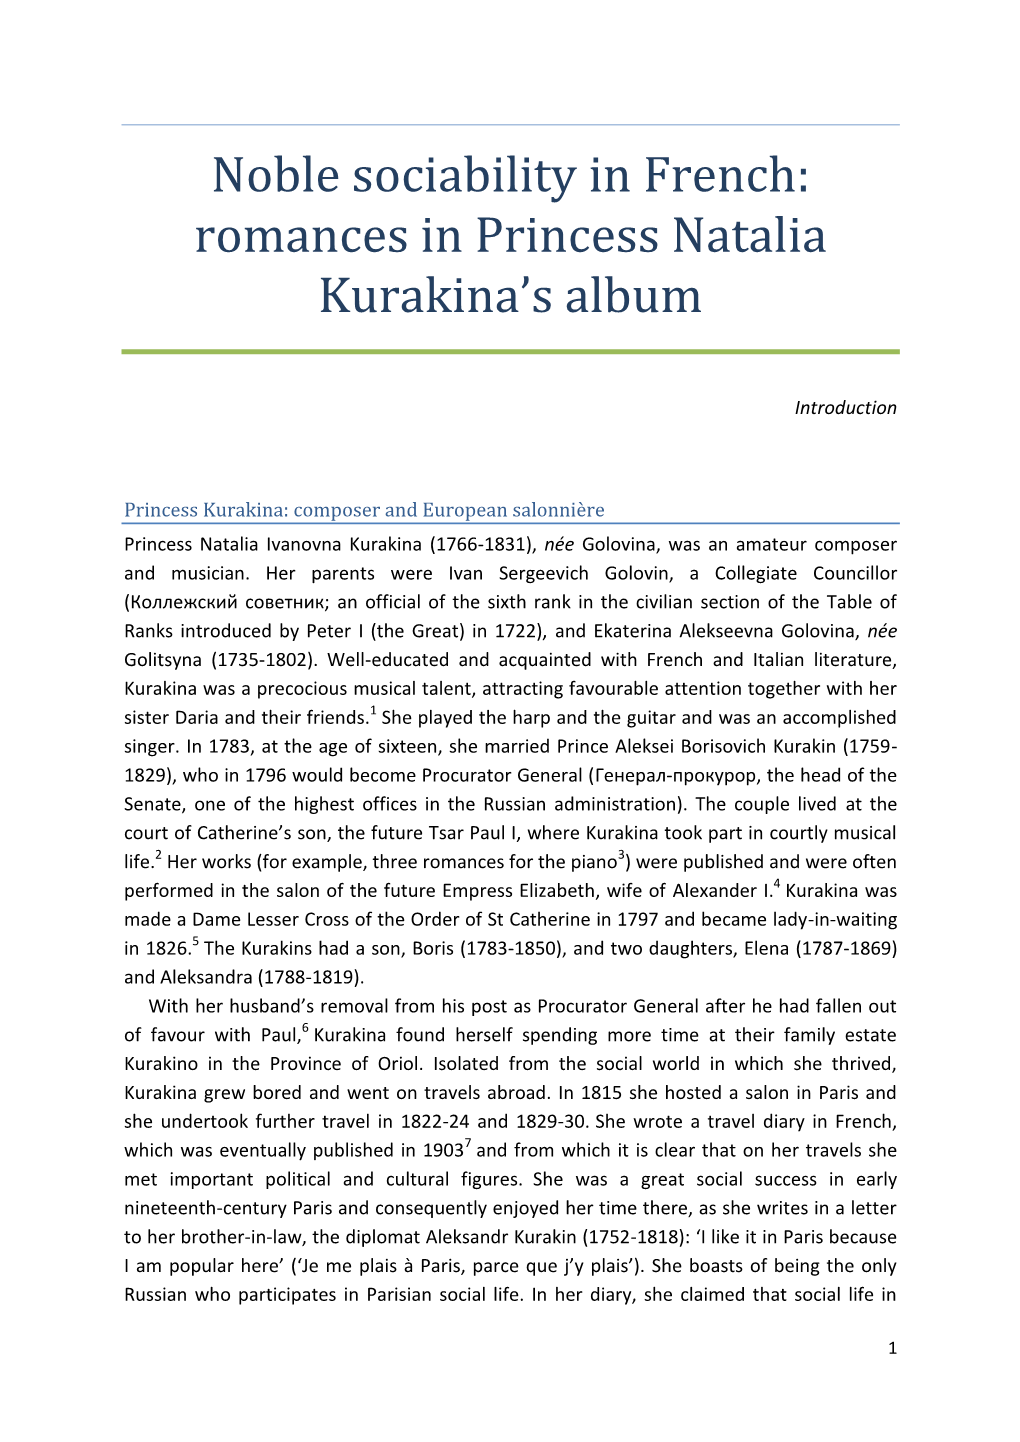 Noble Sociability in French: Romances in Princess Natalia Kurakina's Album